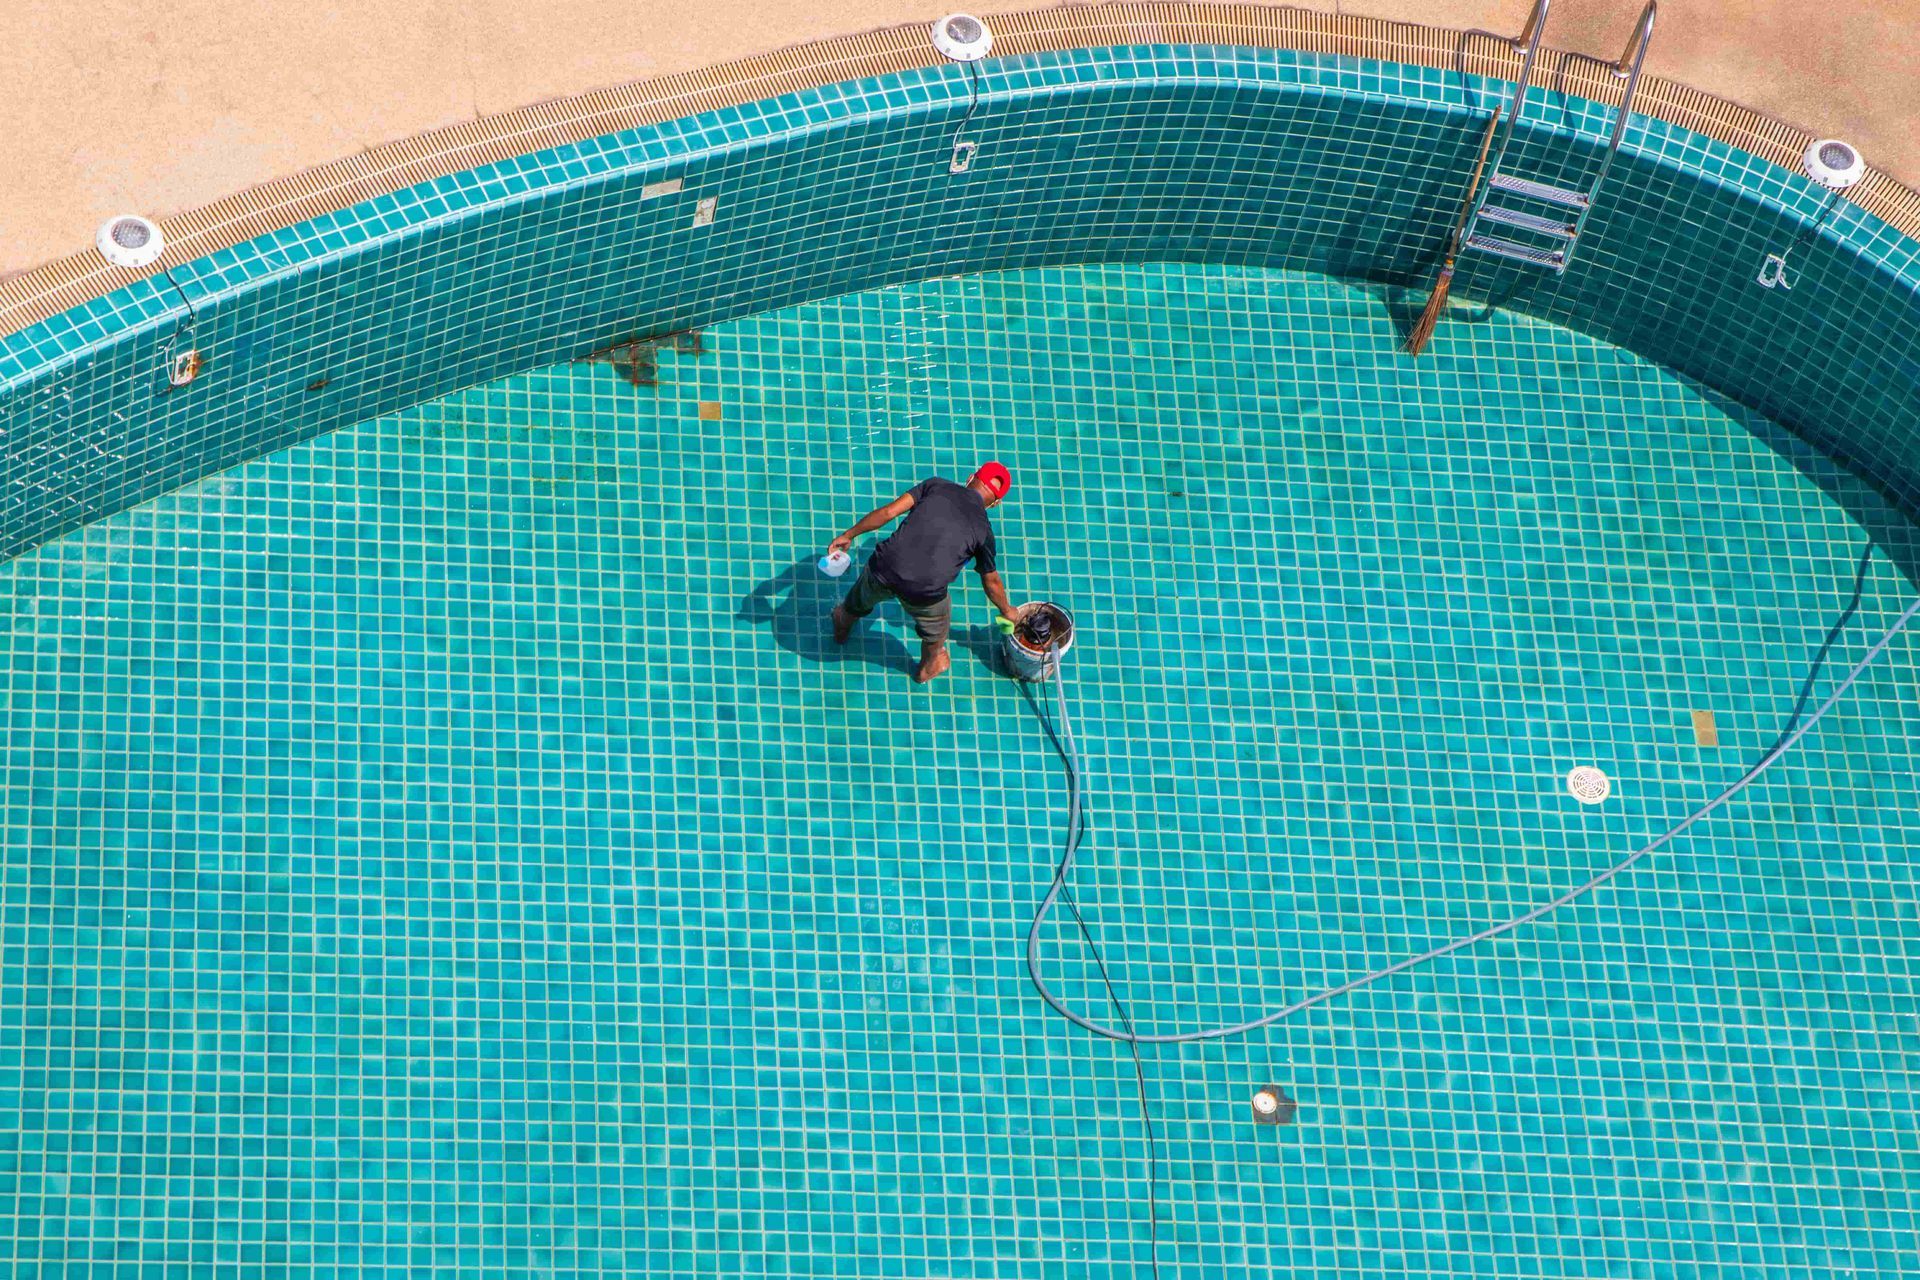 Pool maintenance man servicing pool